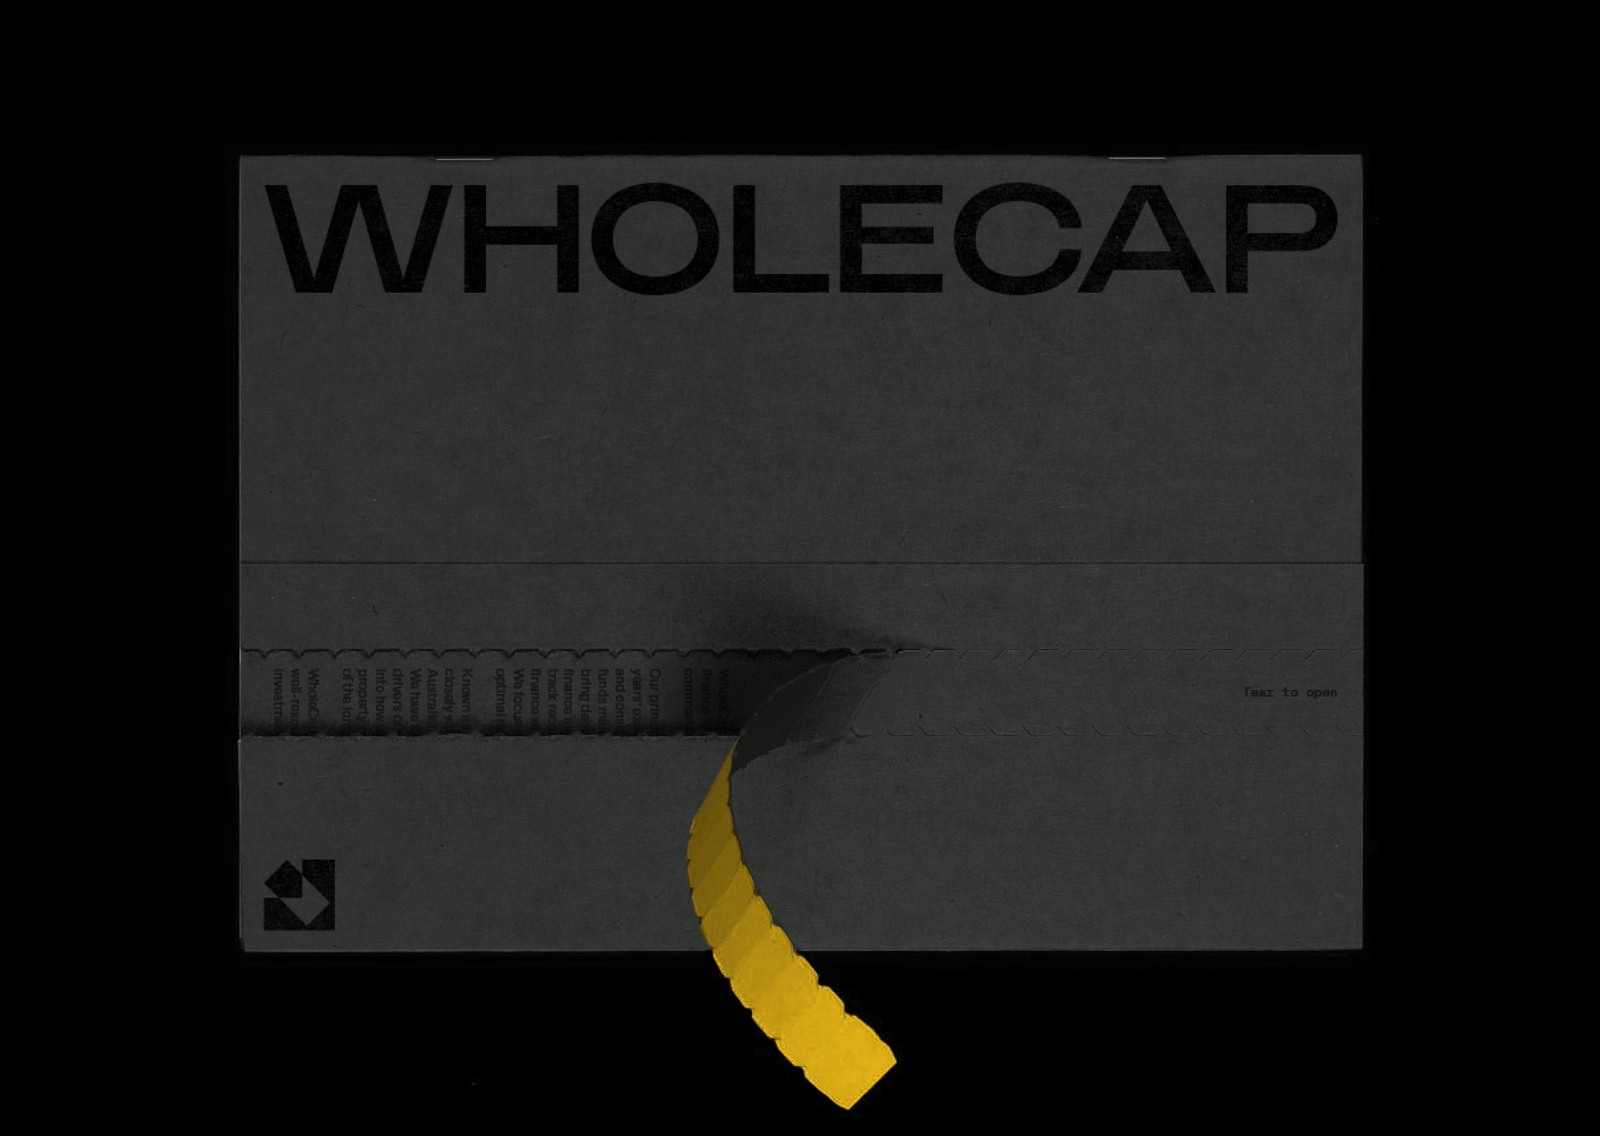 Wholecap - Brand and Website Design - Financial Capital Raising | Atollon - a design company